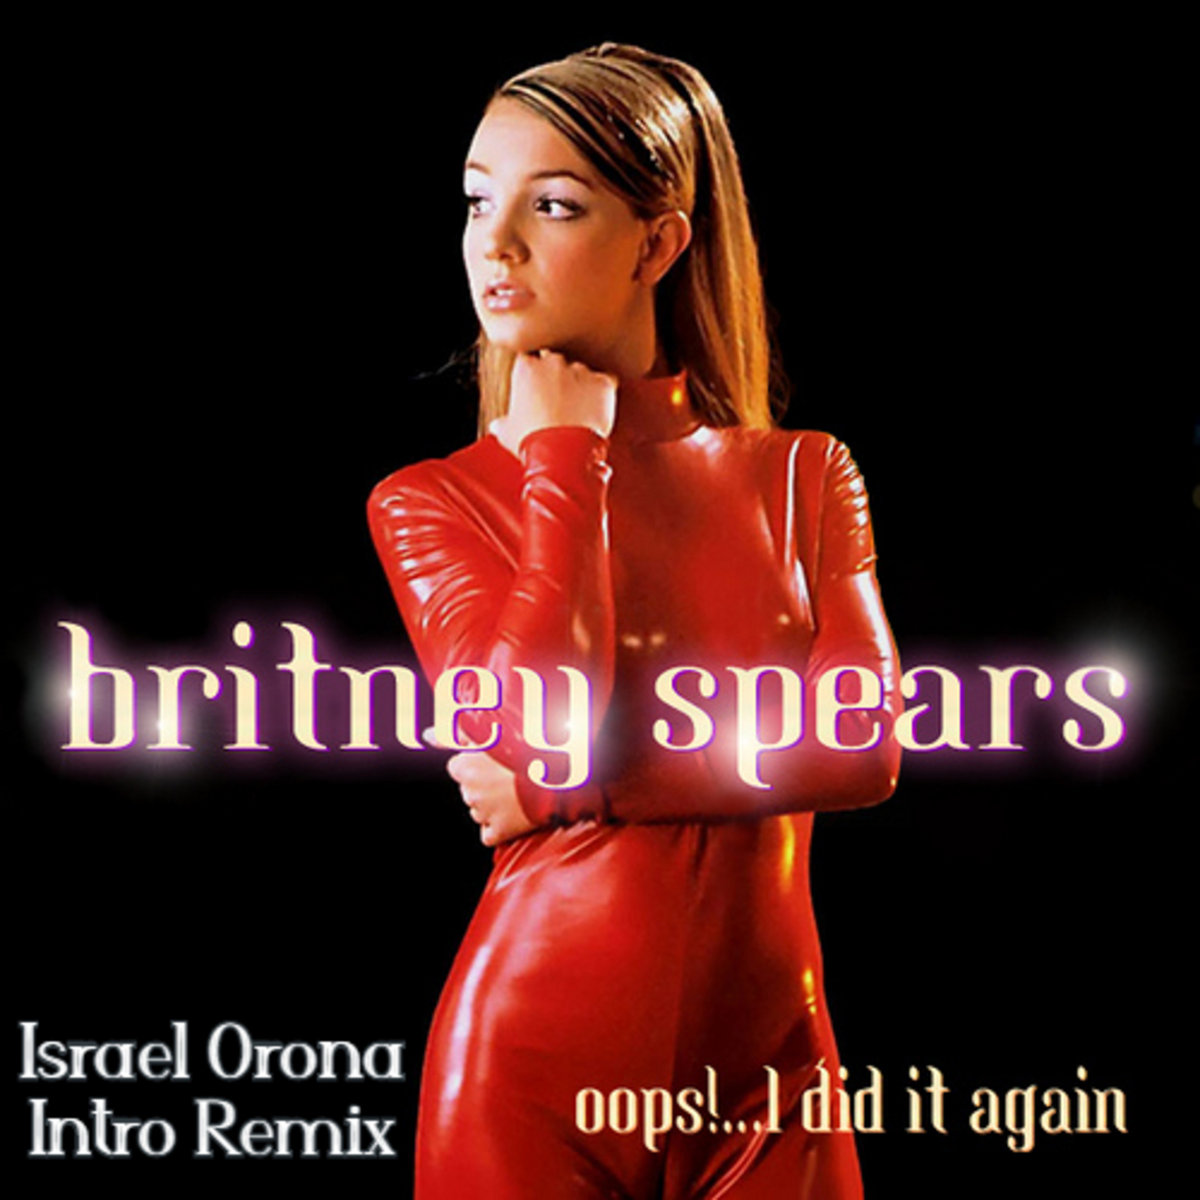 Trang phục Neon đã xuất hiện trong MV của Britney Spears đầu những năm 2000